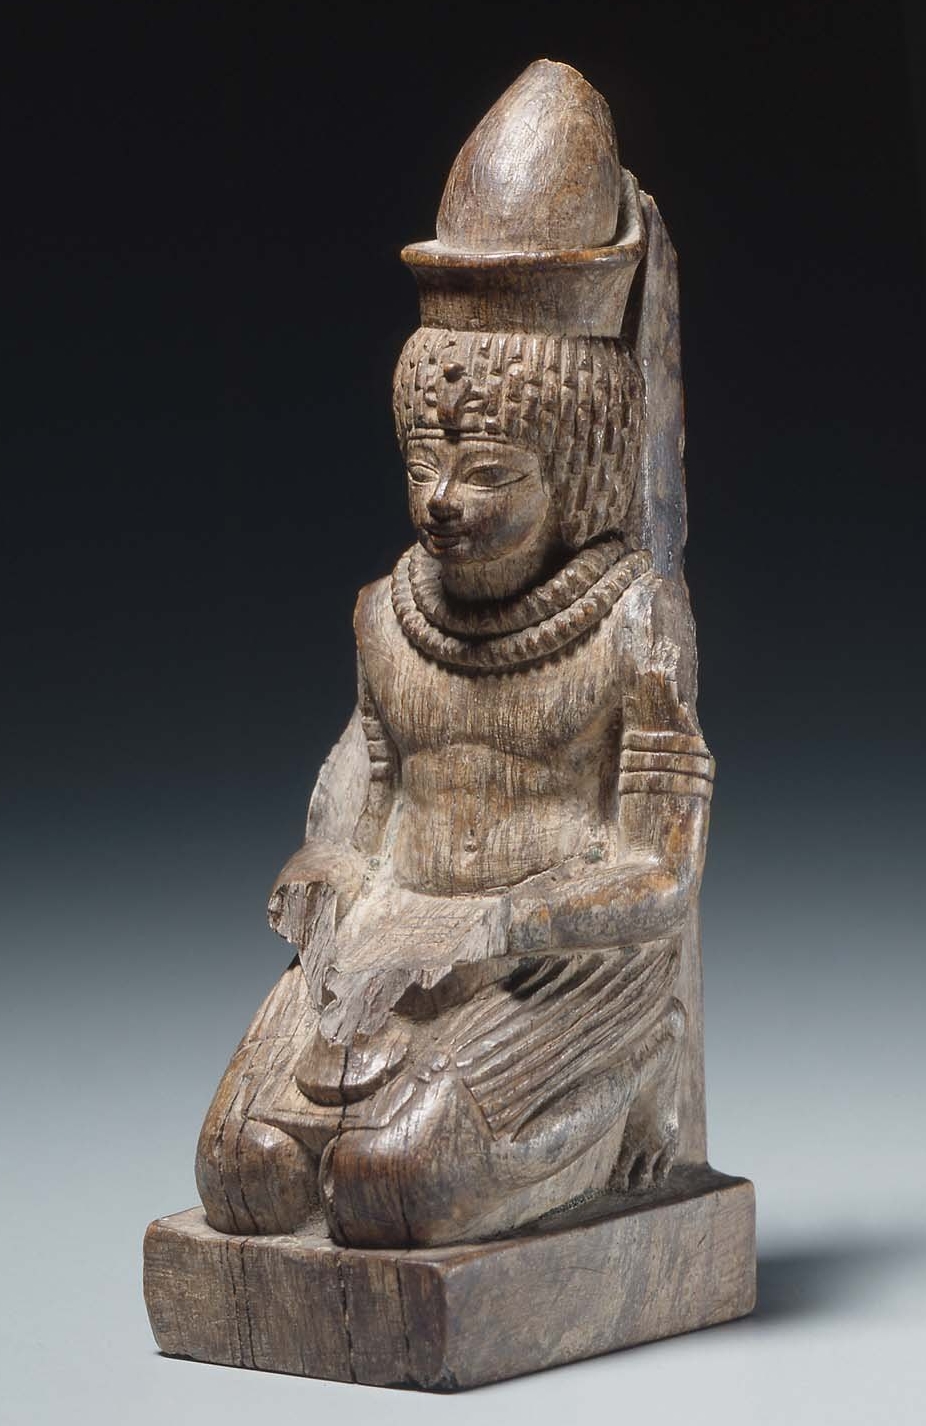 105. a3-neferhotep mfa-1970.636